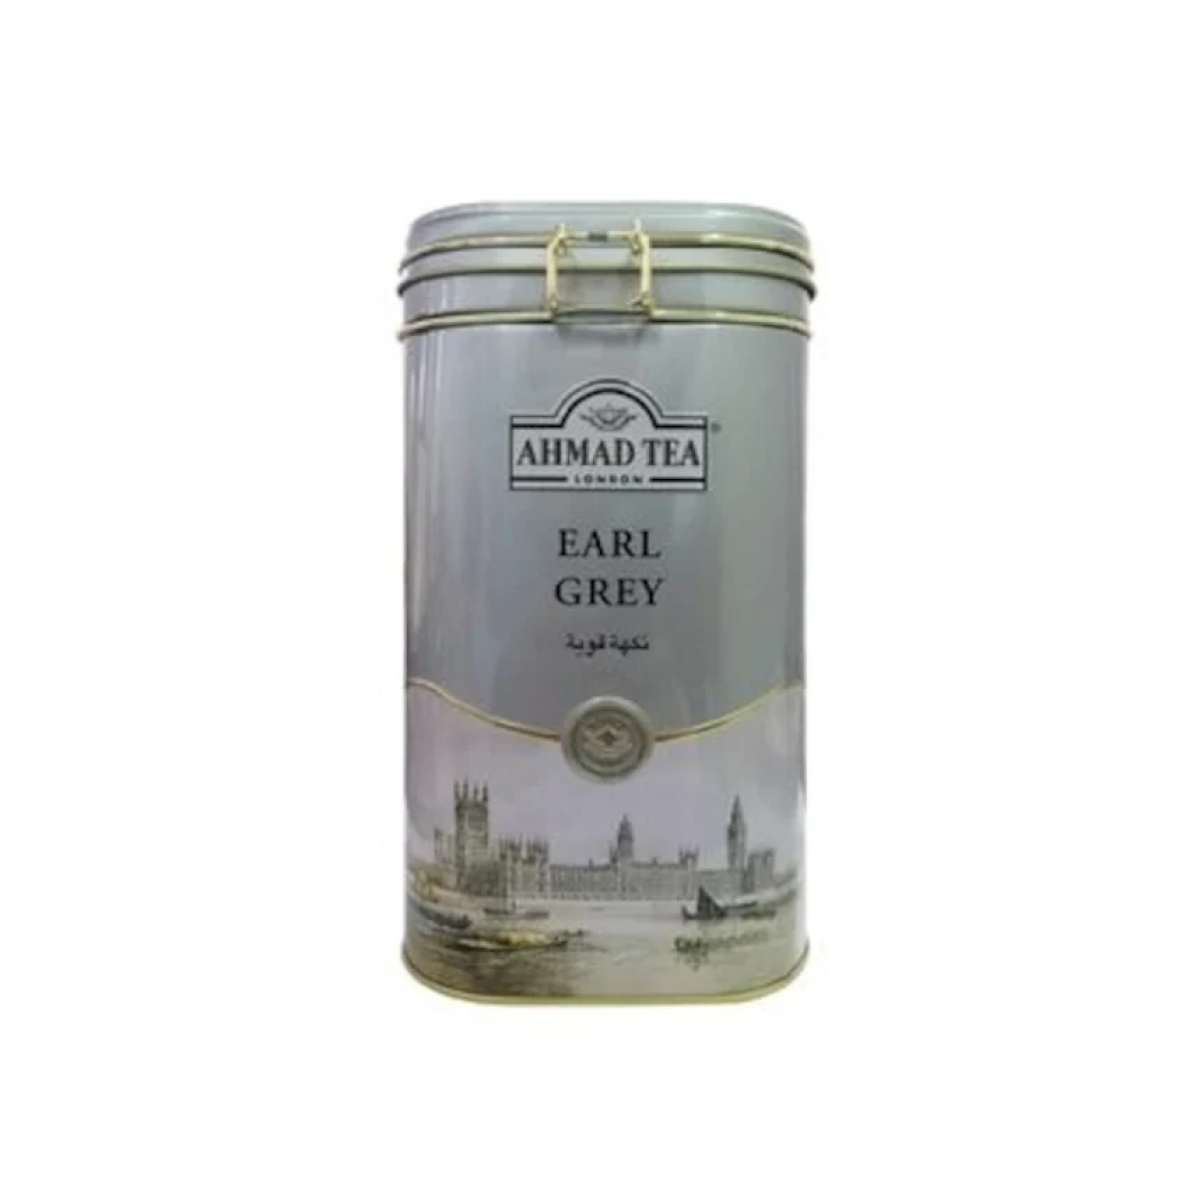 Ahmad Tea Earl Grey Çay Teneke Kutu 450 gr